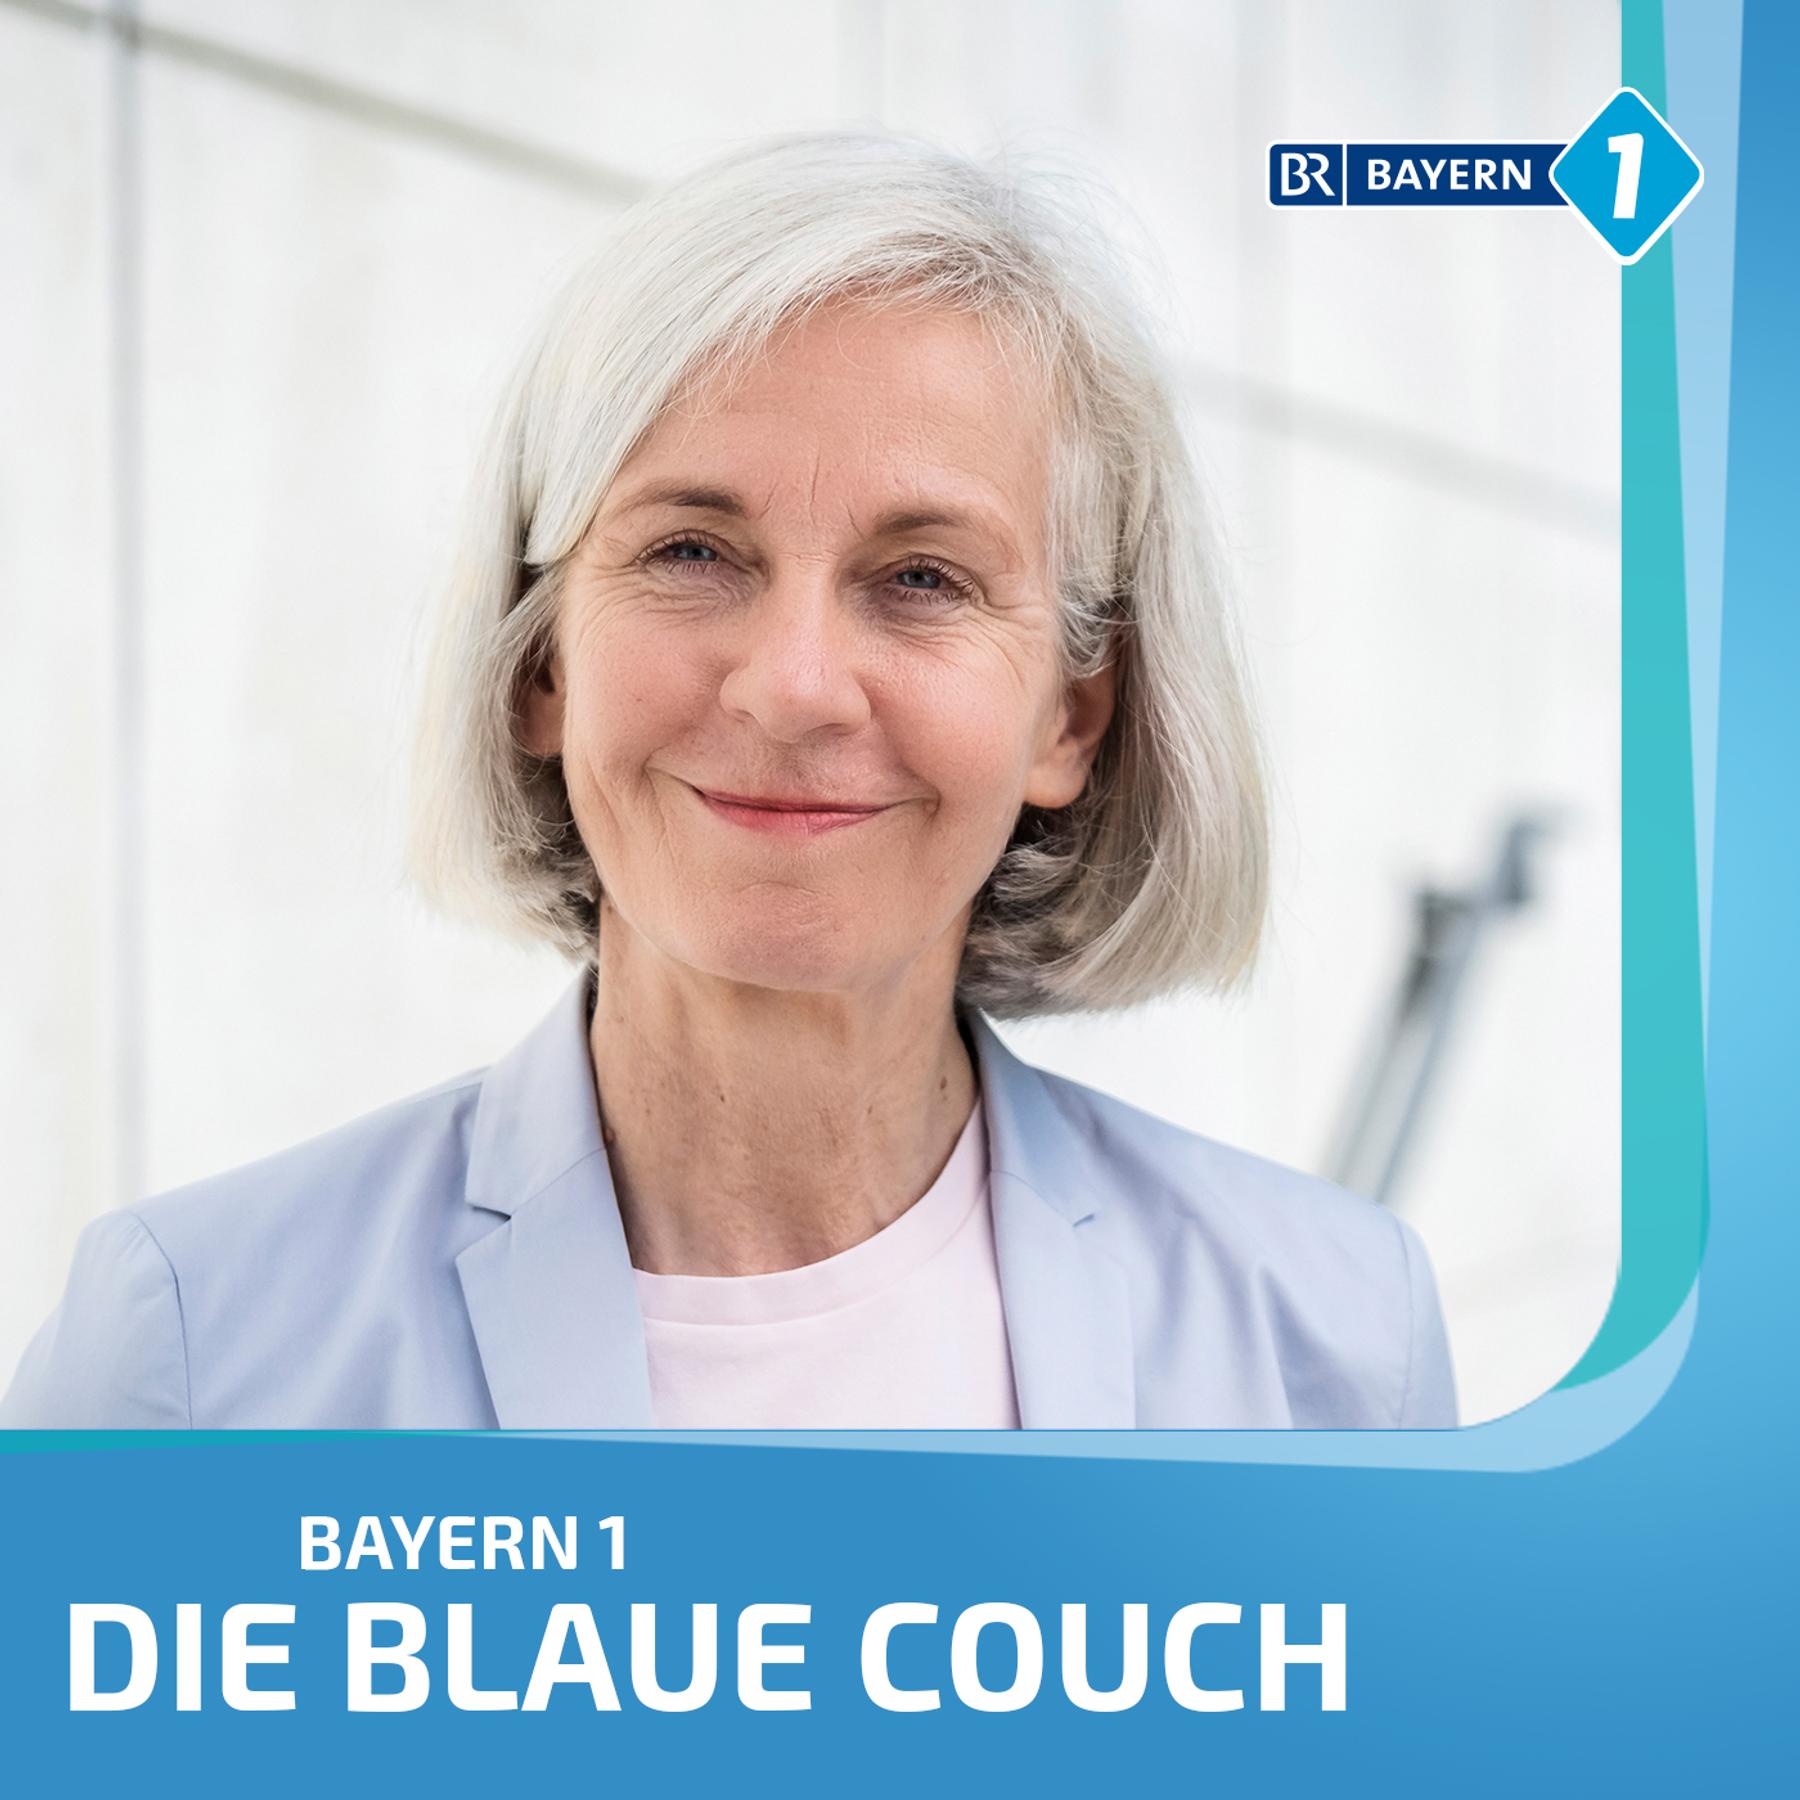 Prof. Dr. Ursula Münch, Politikwissenschaftlerin, über den Wahlkampf in Bayern